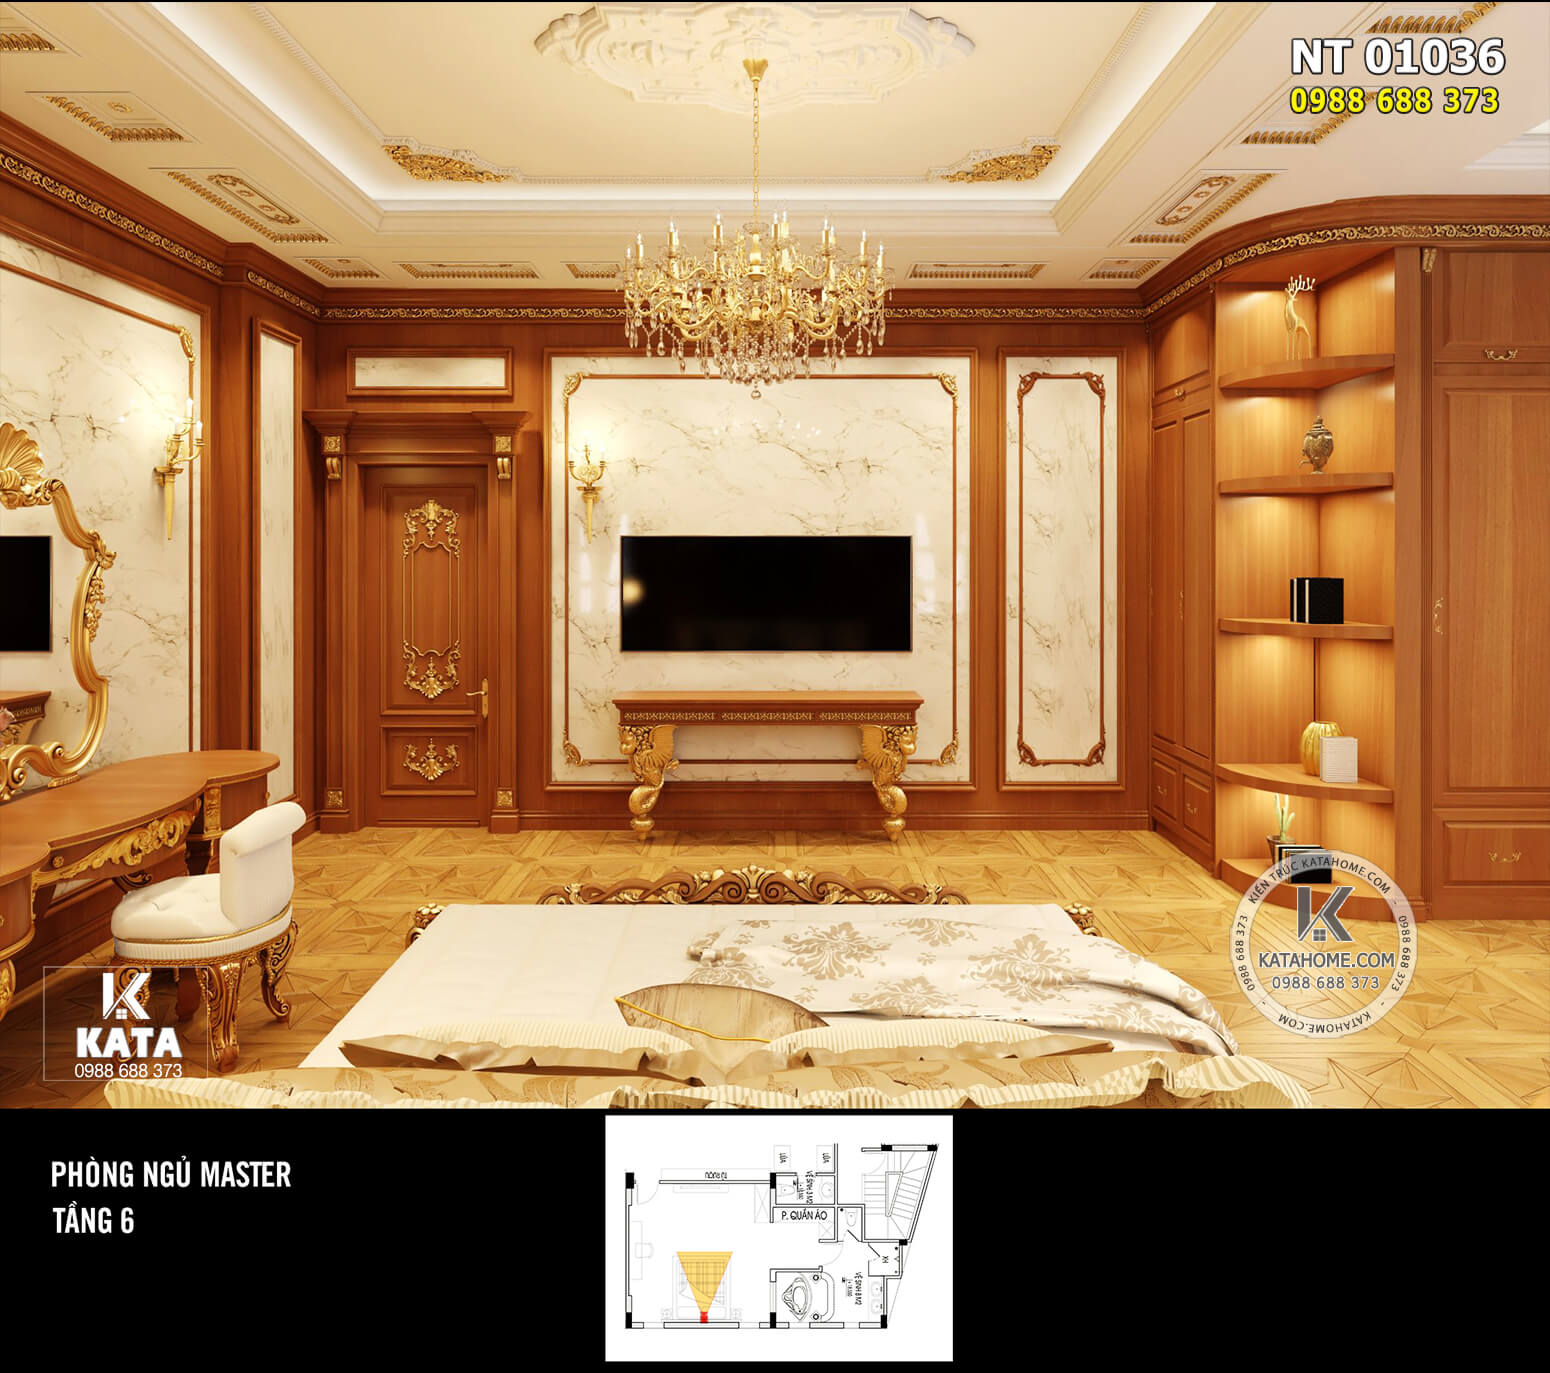 Hình ảnh: Đồ nội thất gỗ tạo điểm nhấn nhờ hệ hoa văn mạ vàng